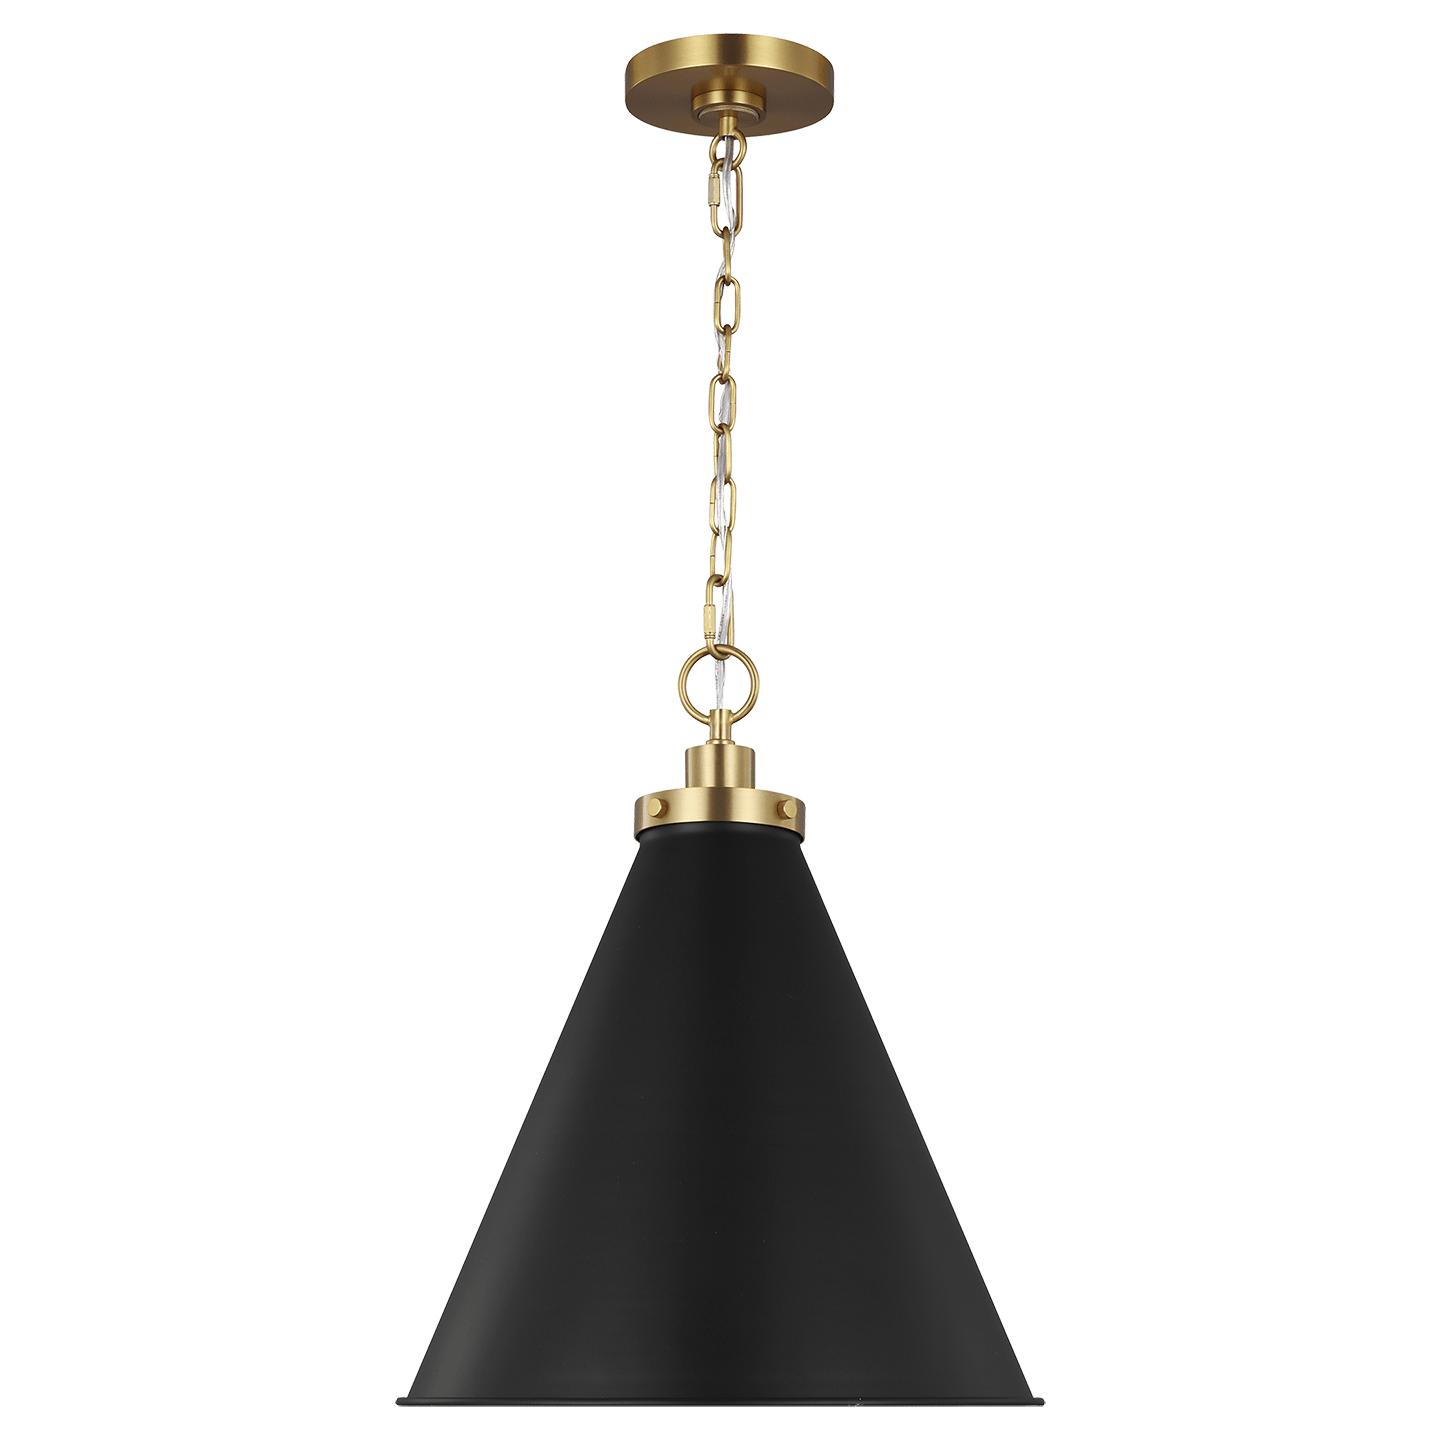 Купить Подвесной светильник Wellfleet Medium Cone Pendant в интернет-магазине roooms.ru